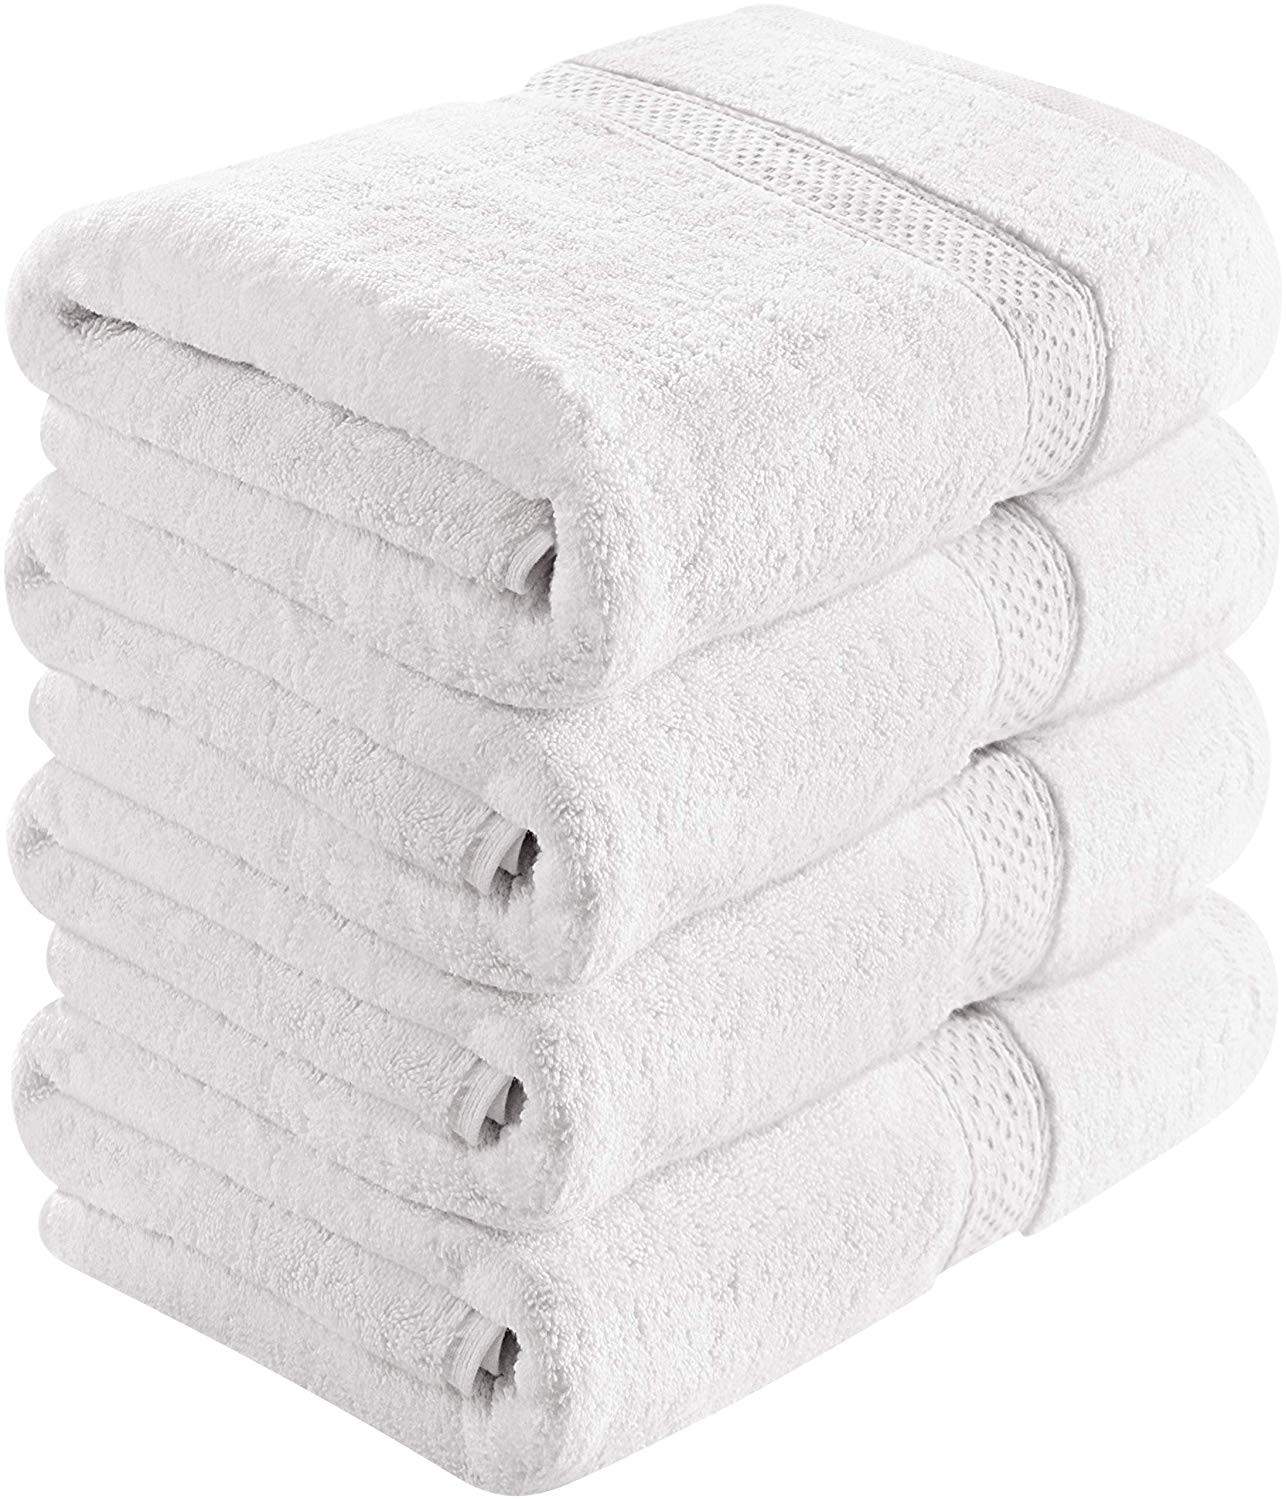 Favorite Towels